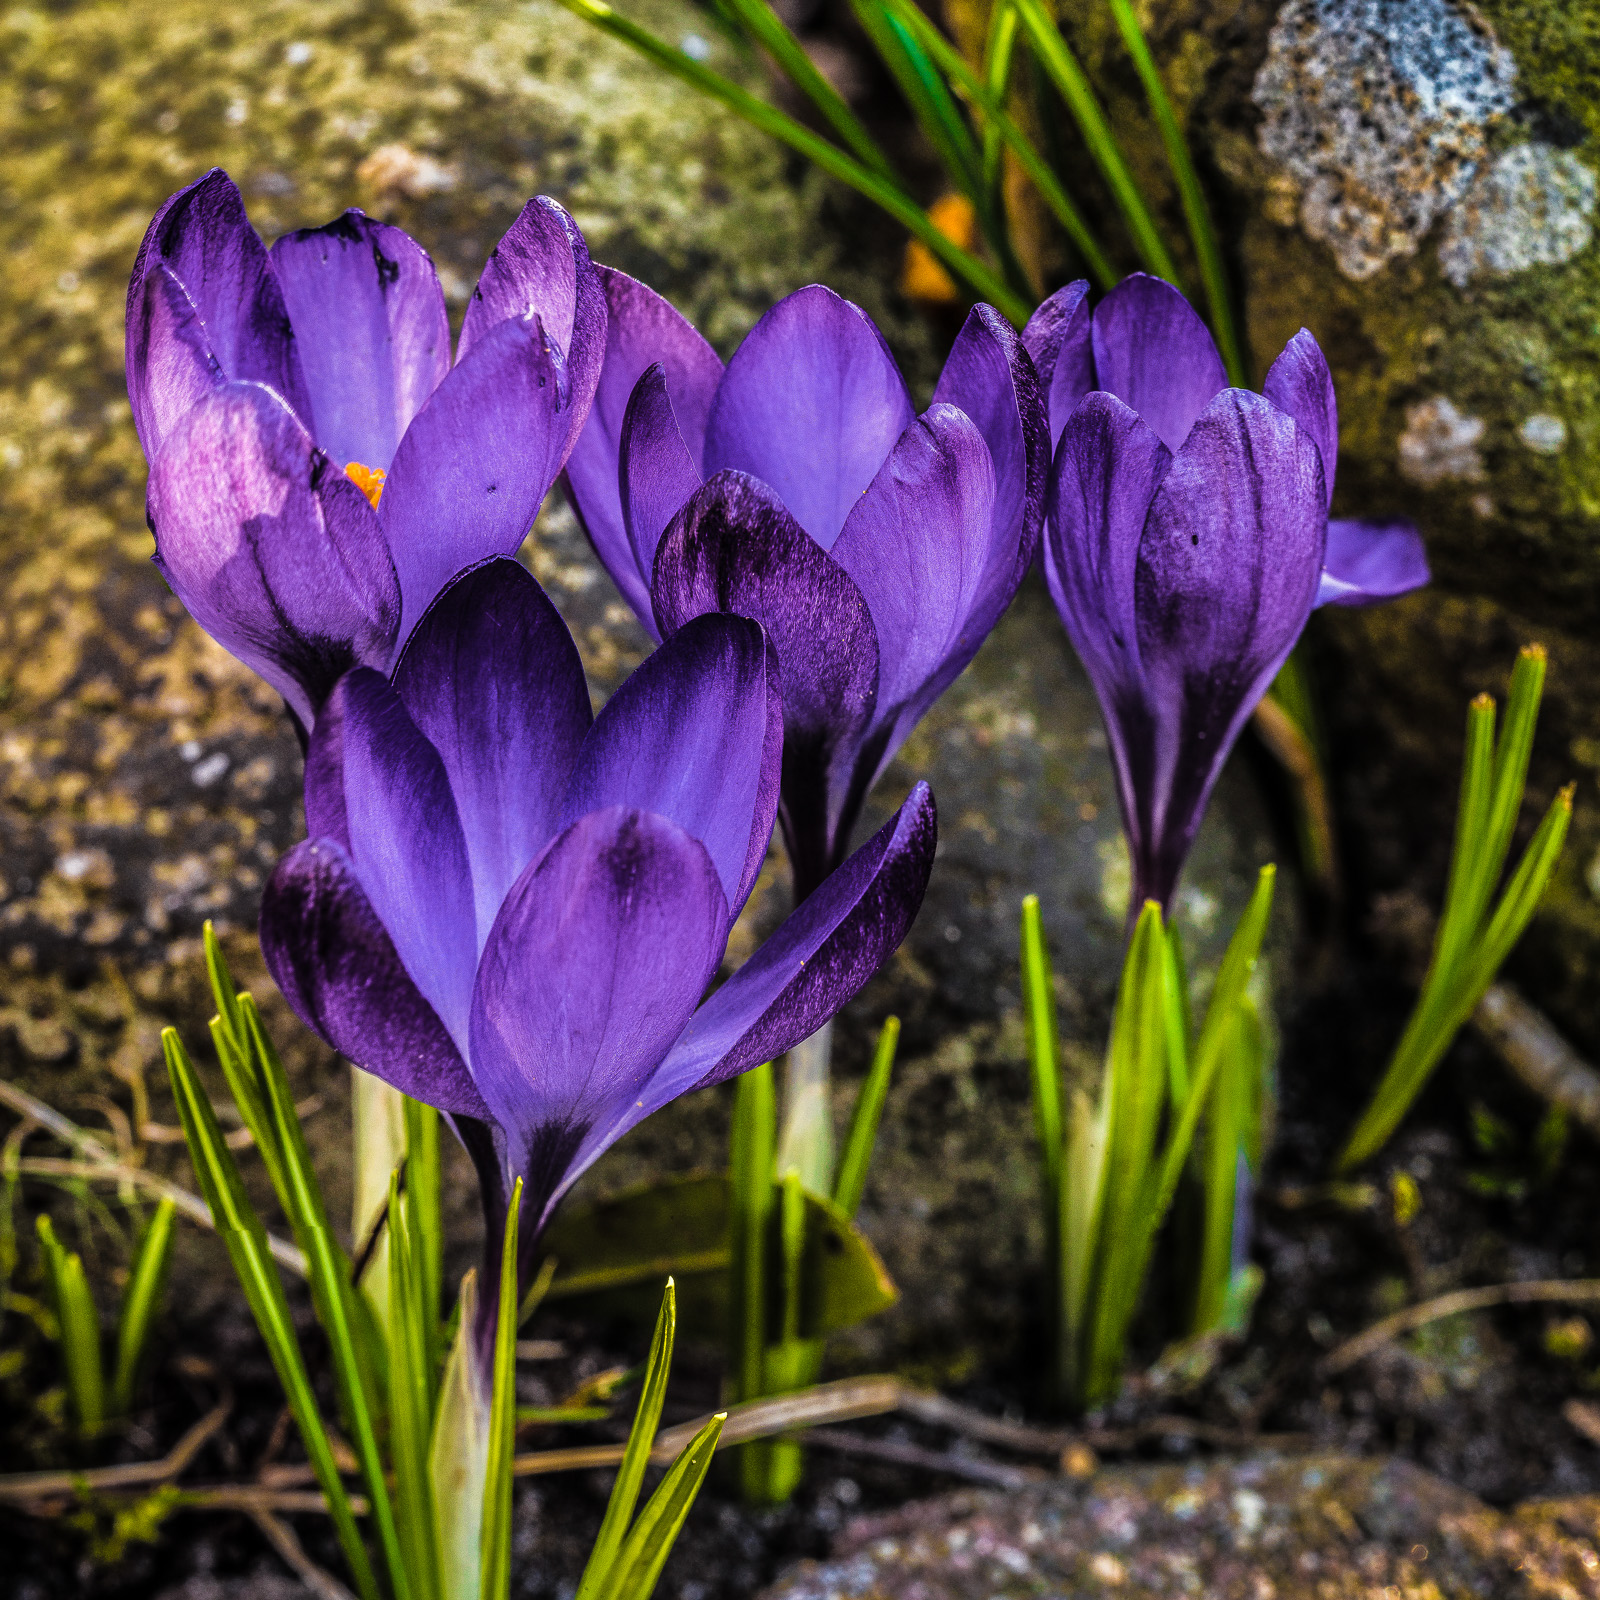 Eine Gruppe von vier violetten Krokussen vor Steinen, Seitenlicht fällt nur auf die Blüte ganz links, deren orange-gelbes Staubblatt als einziges sichtbar ist.